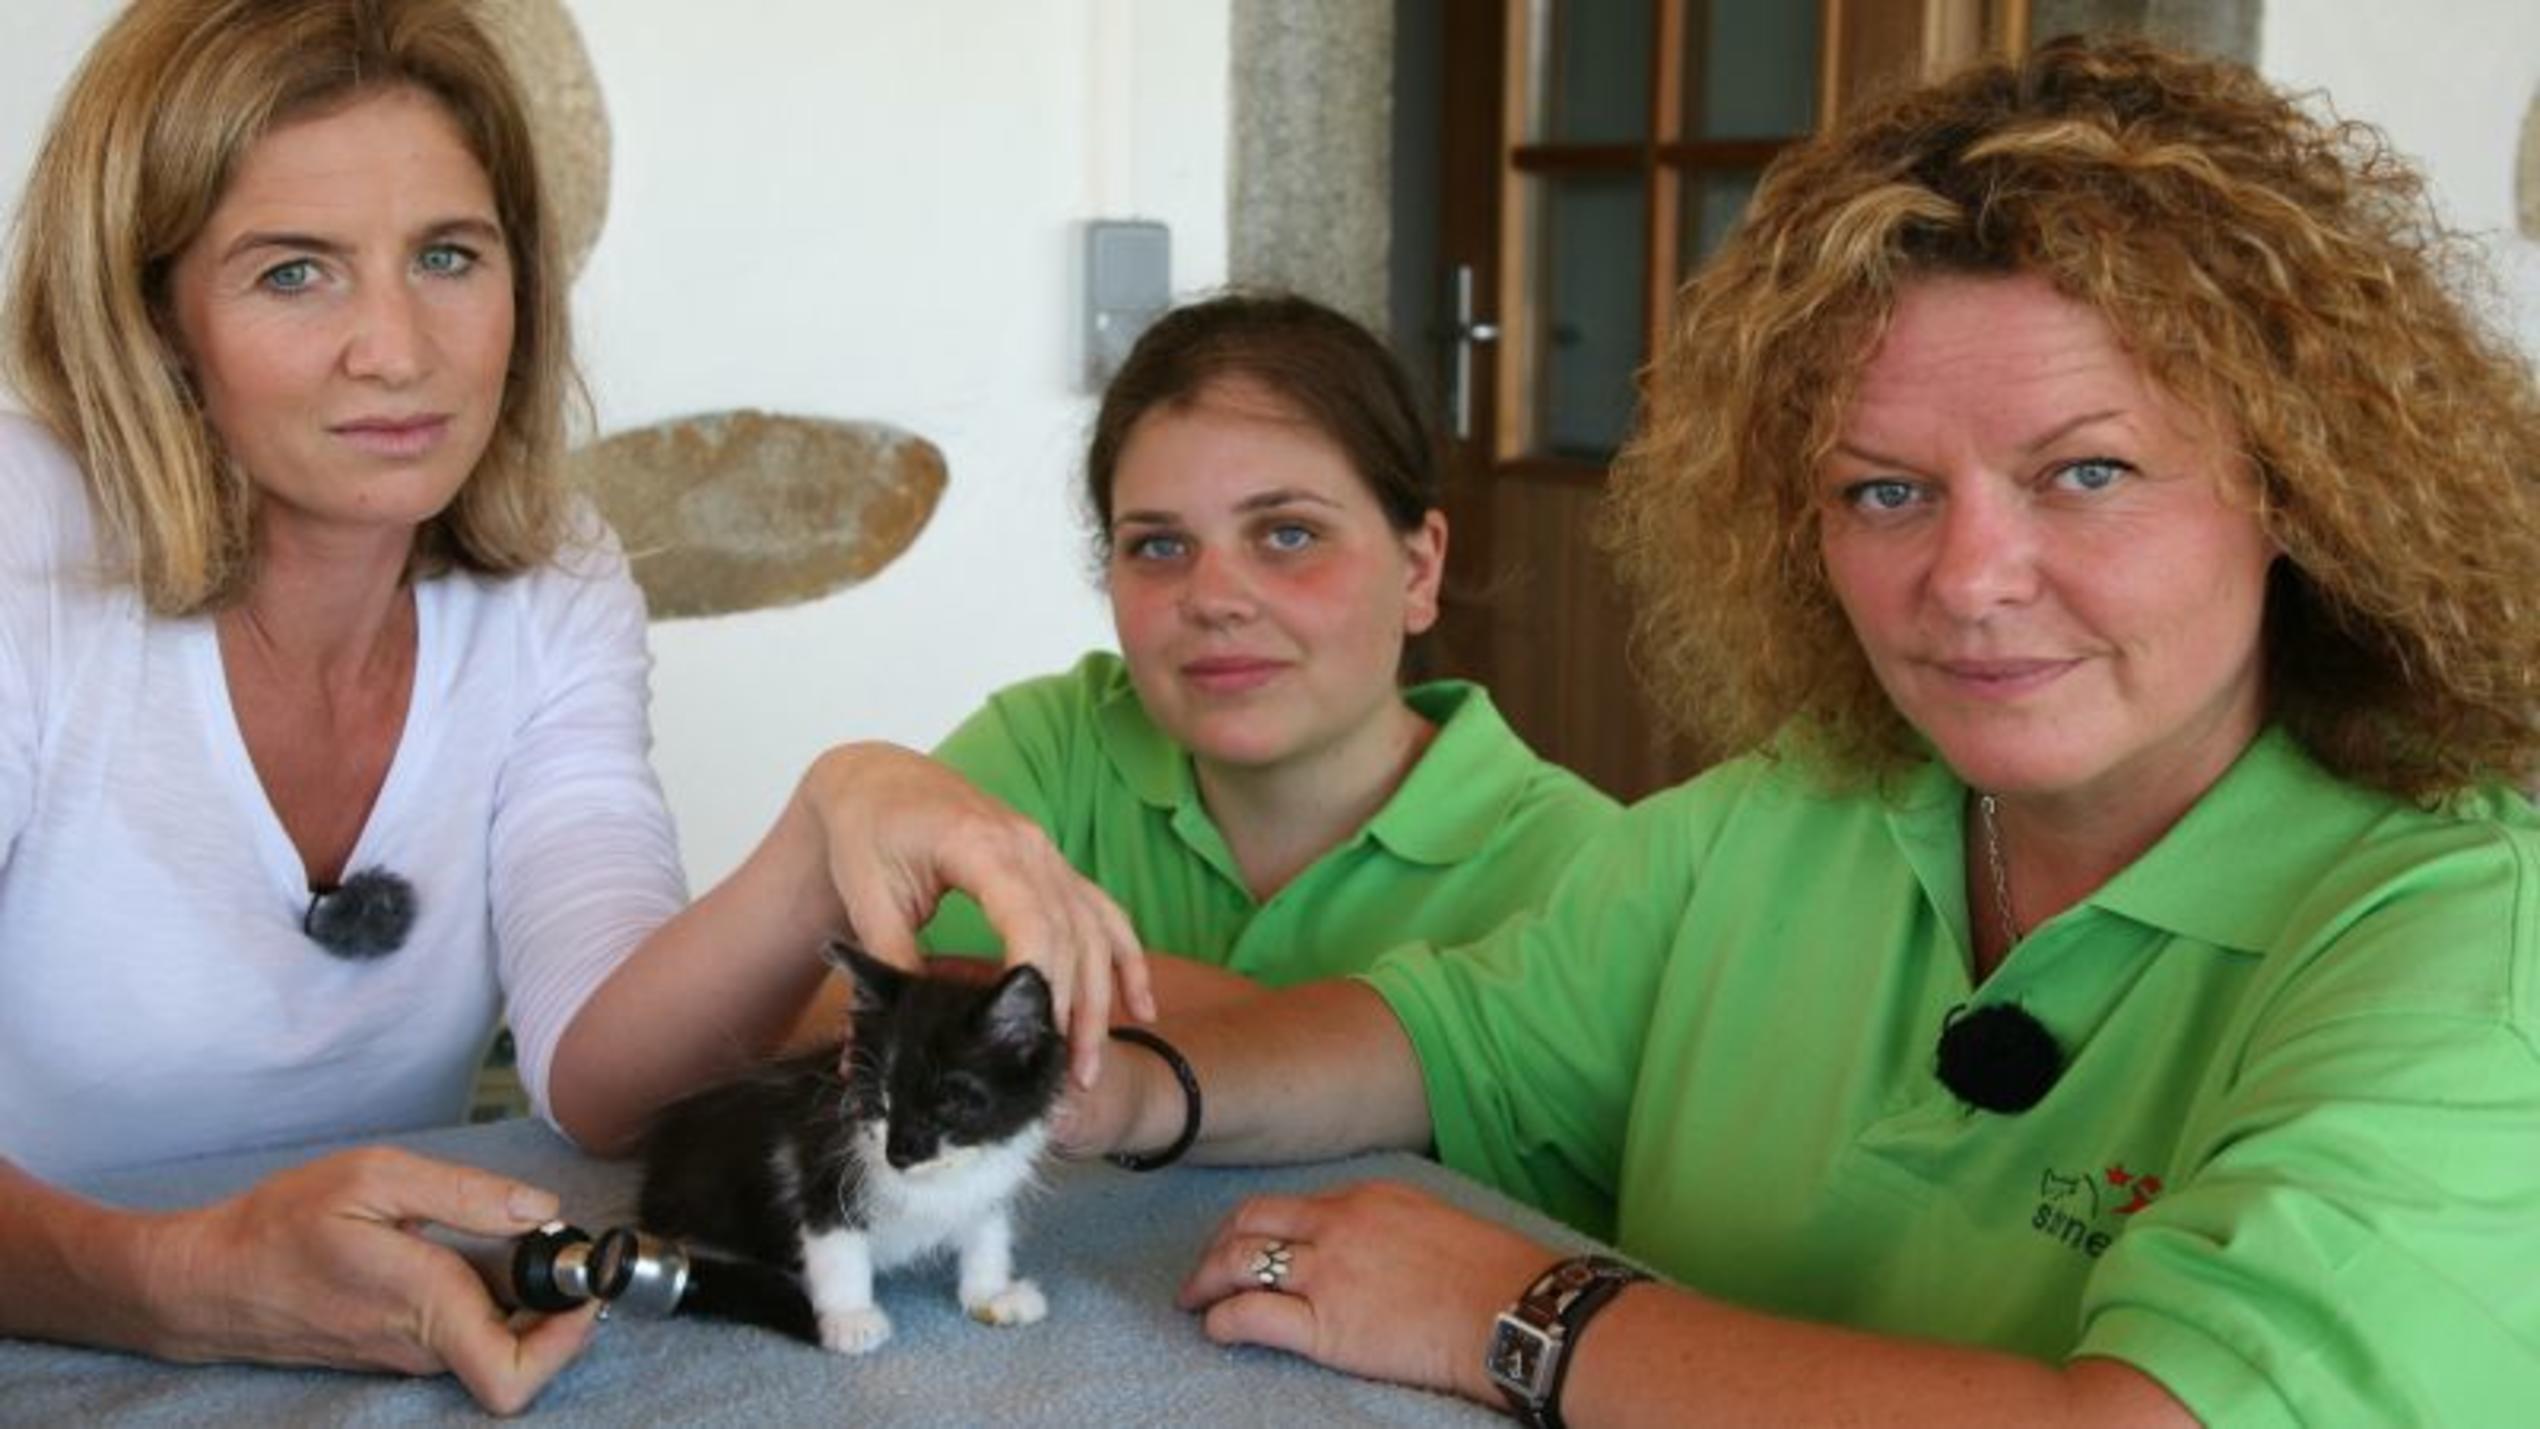 v.l. Dr. Susanne Stiegler, Mandy und Christina Schmidt mit Katzenbaby. Foto: VOX/Docma TV/Dr. Gerald Krakauer